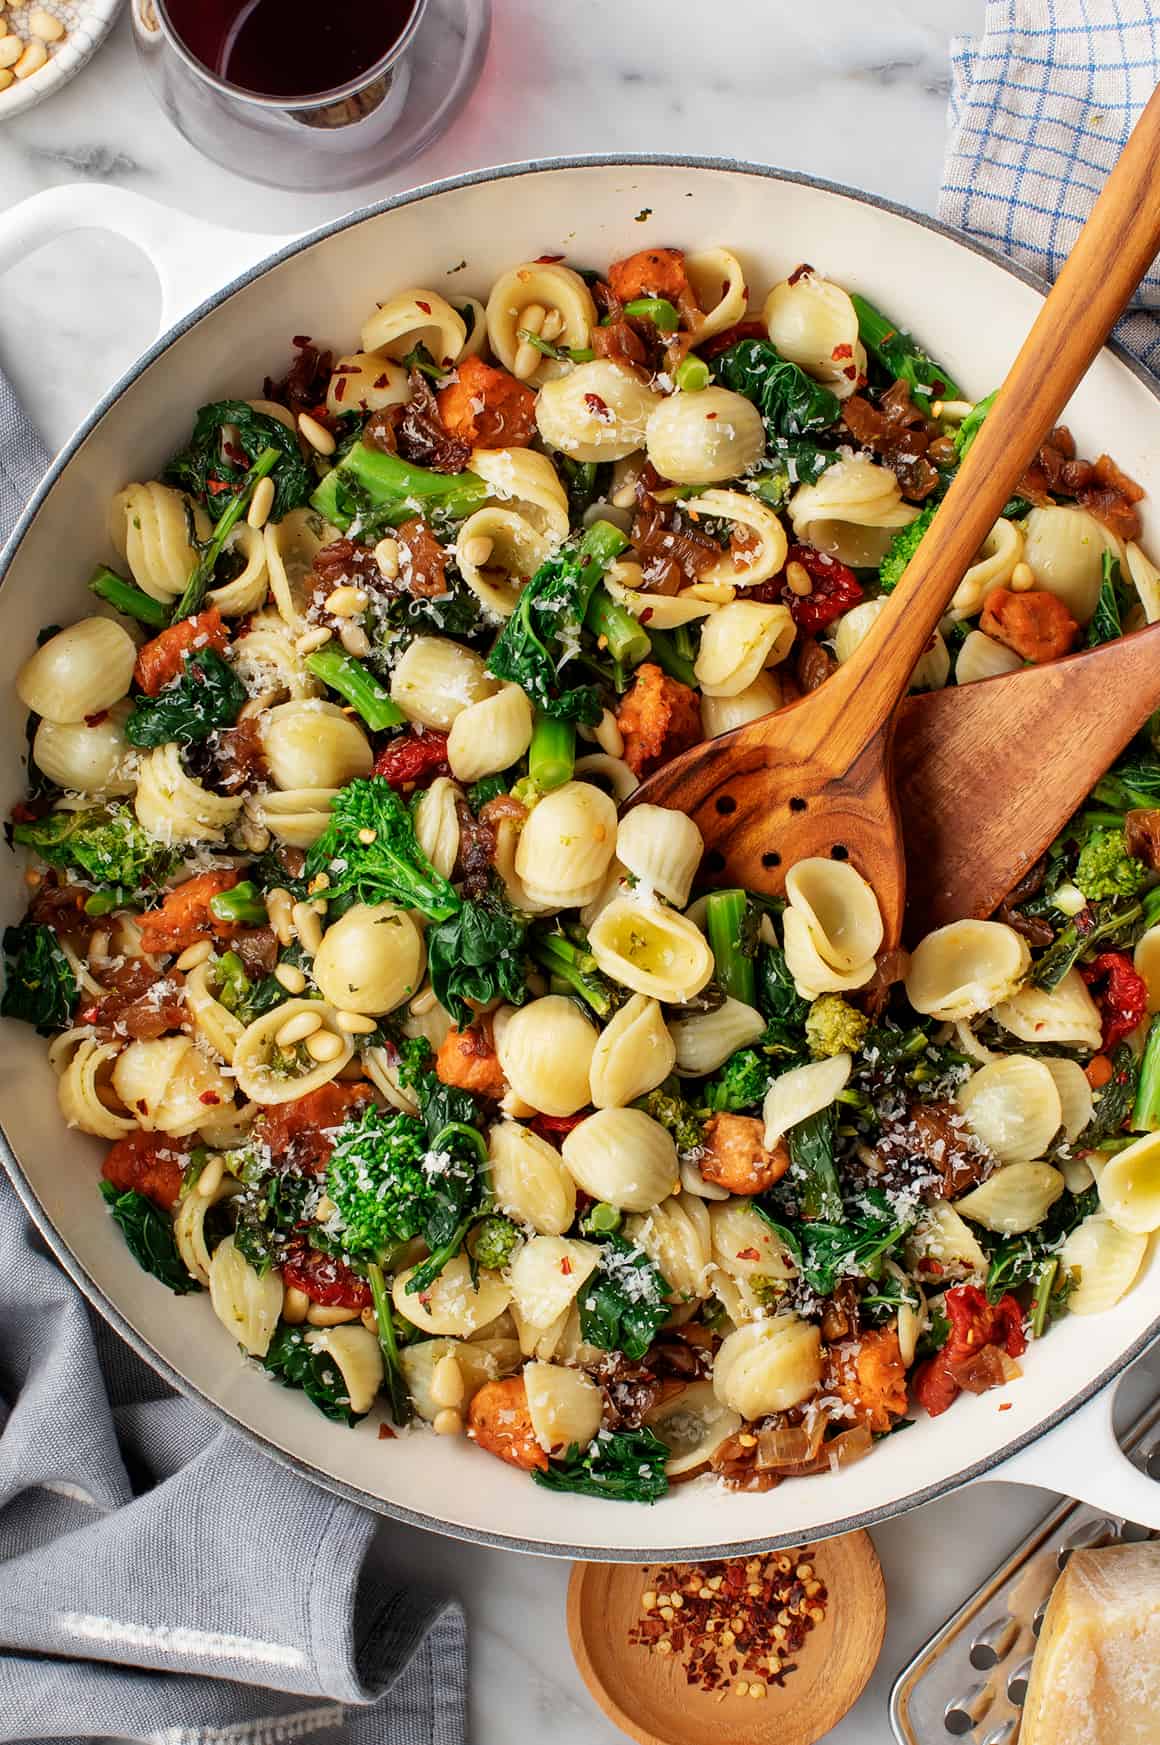 Orecchiette pasta with broccoli rabe